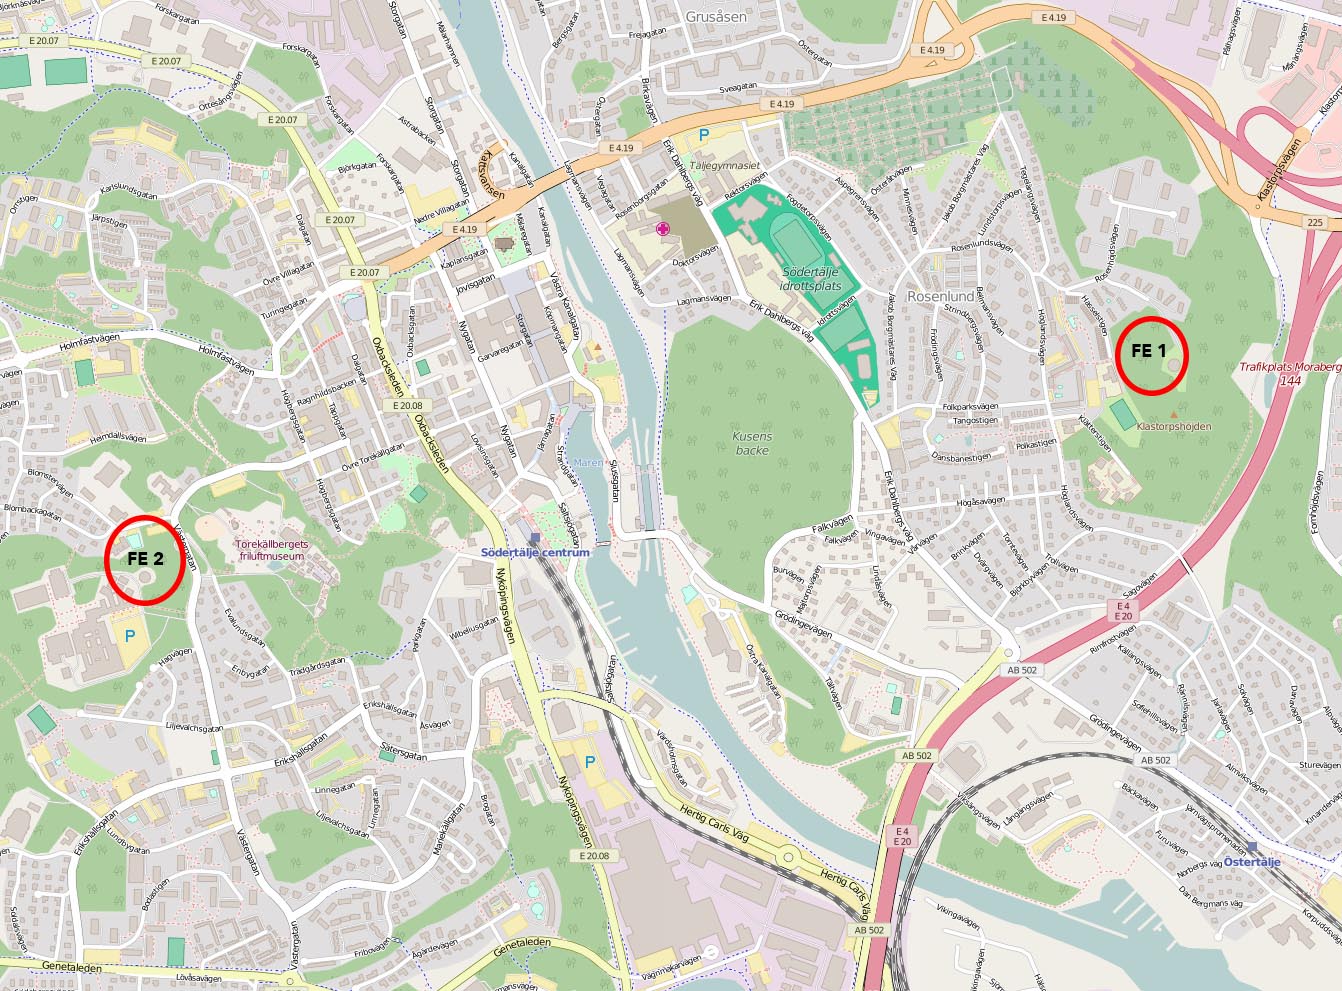 Kartan visar placeringen av FE 1 i Rosenlund och FE 2 i Västergård. Klicka för att se den i större format. Kartunderlag: © OpenStreetMaps bidragsgivare.